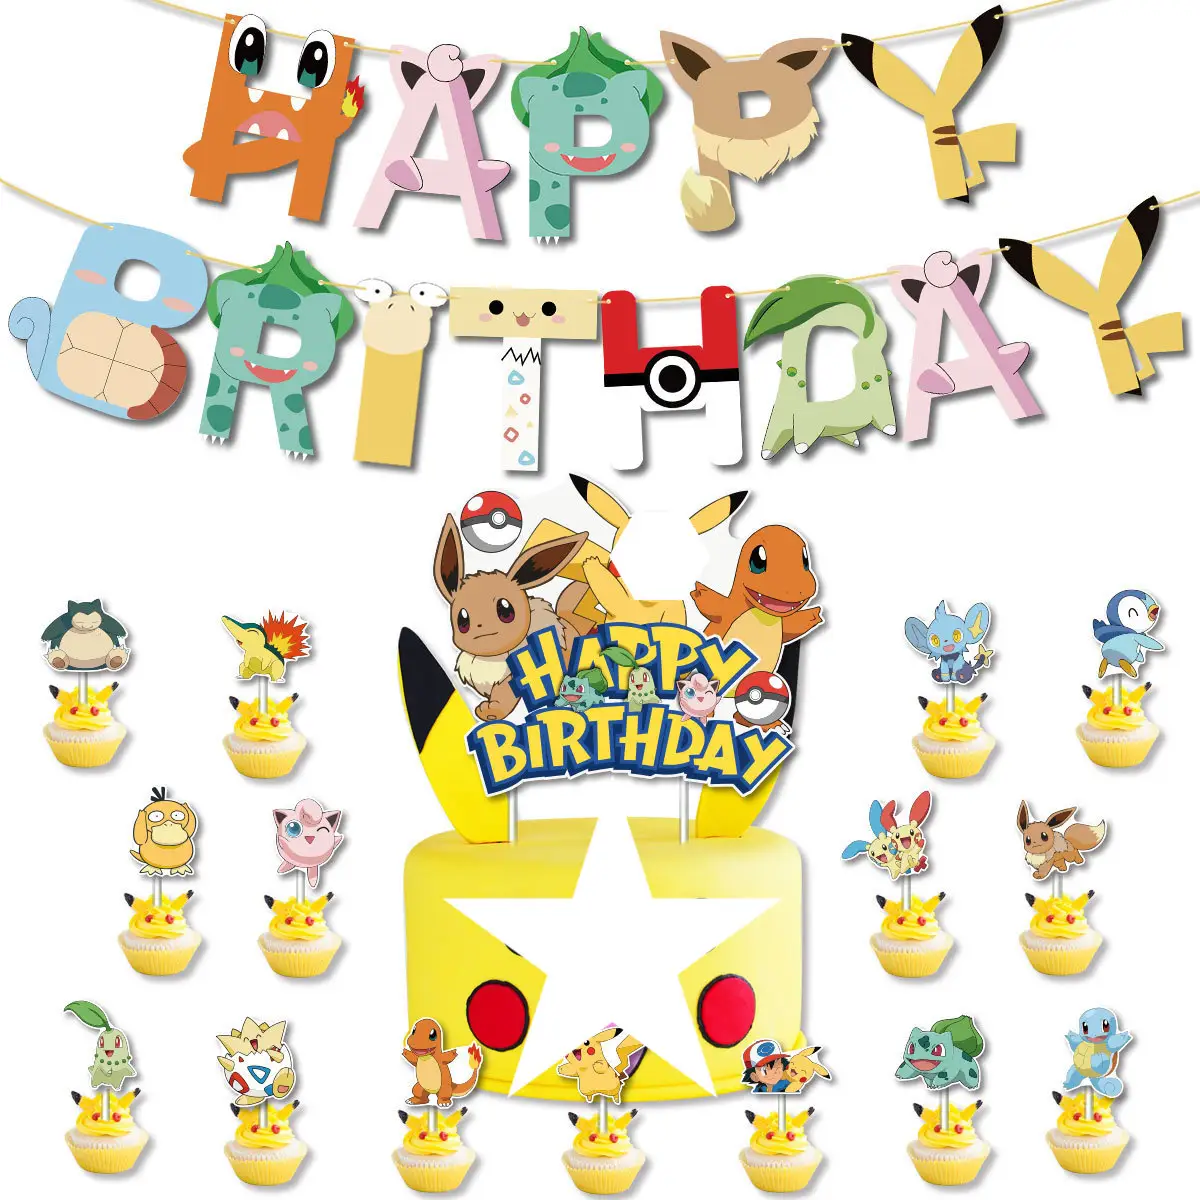 Poke Cake Flag Set Pokemoned Theme Birthday Party Decoração Feliz Aniversário Eevee Cake Topper Suprimentos